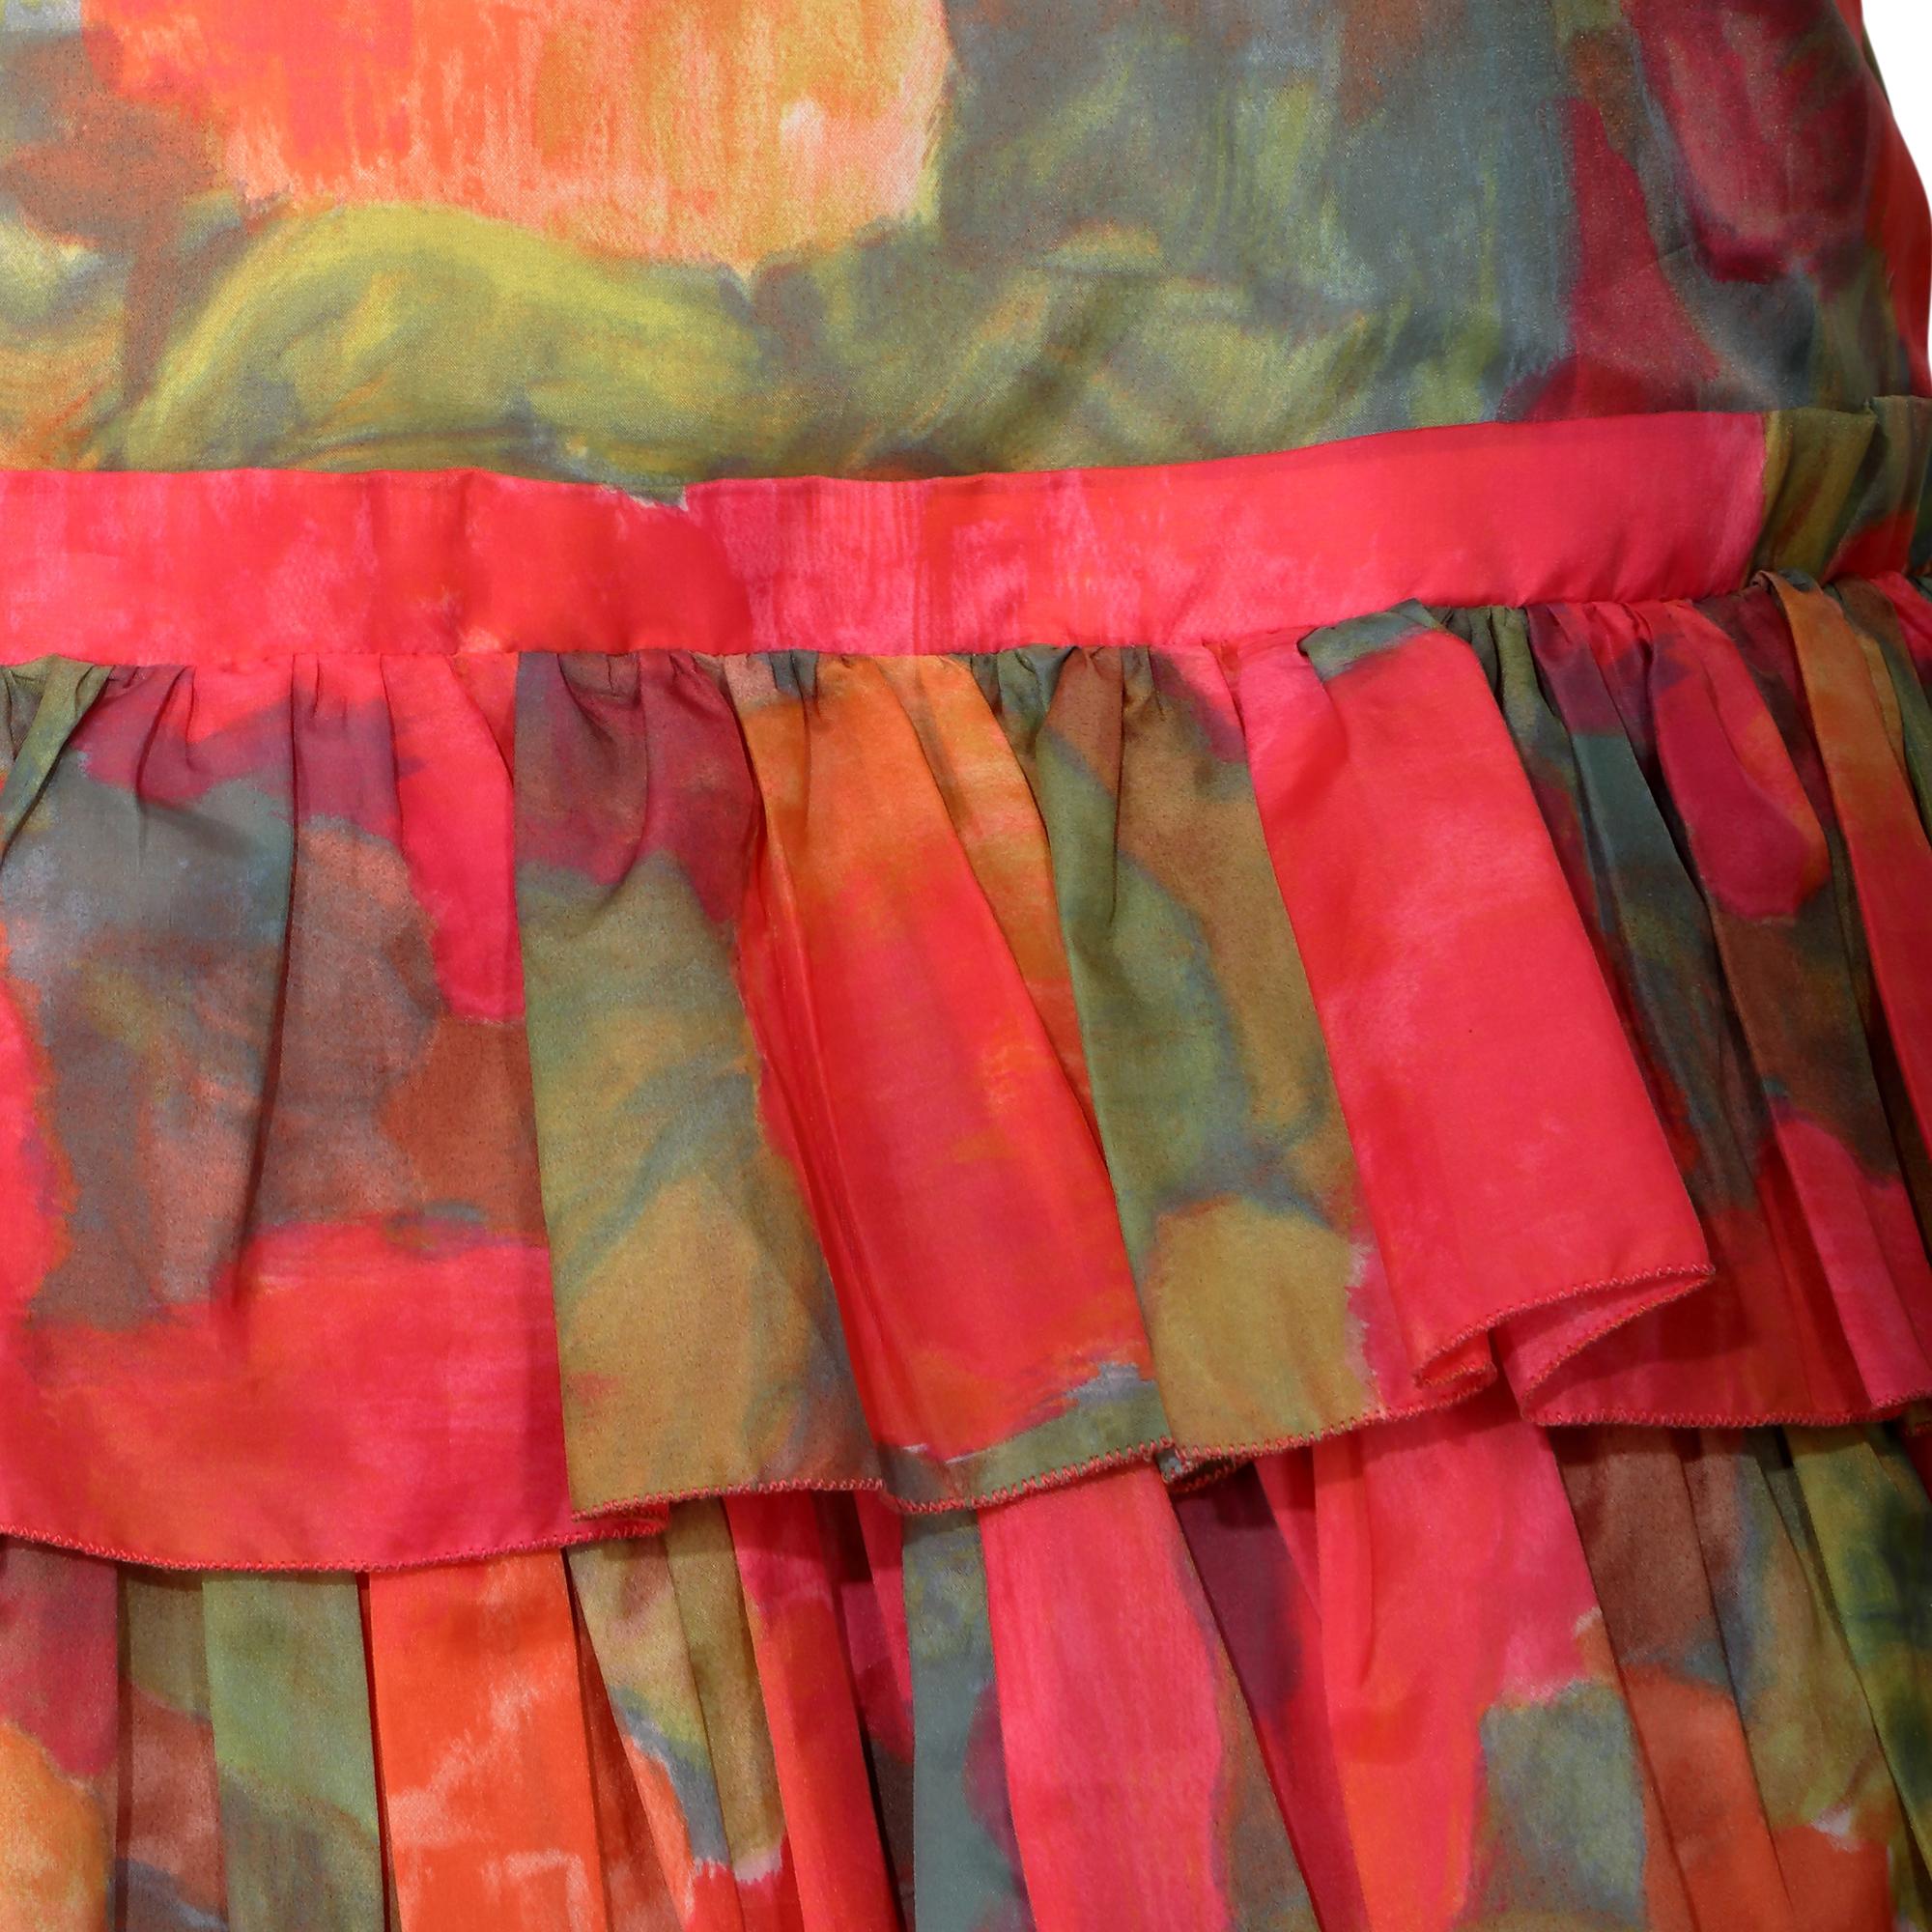 Dieses originelle Vintage-Kleid aus den 1960er Jahren besticht durch seine leuchtenden Farben. Es scheint ein abstrakter Rosendruck in warmen Rosé-, Orange- und Grüntönen zu sein. Das herausragende Designelement dieses Stücks ist der wunderschöne